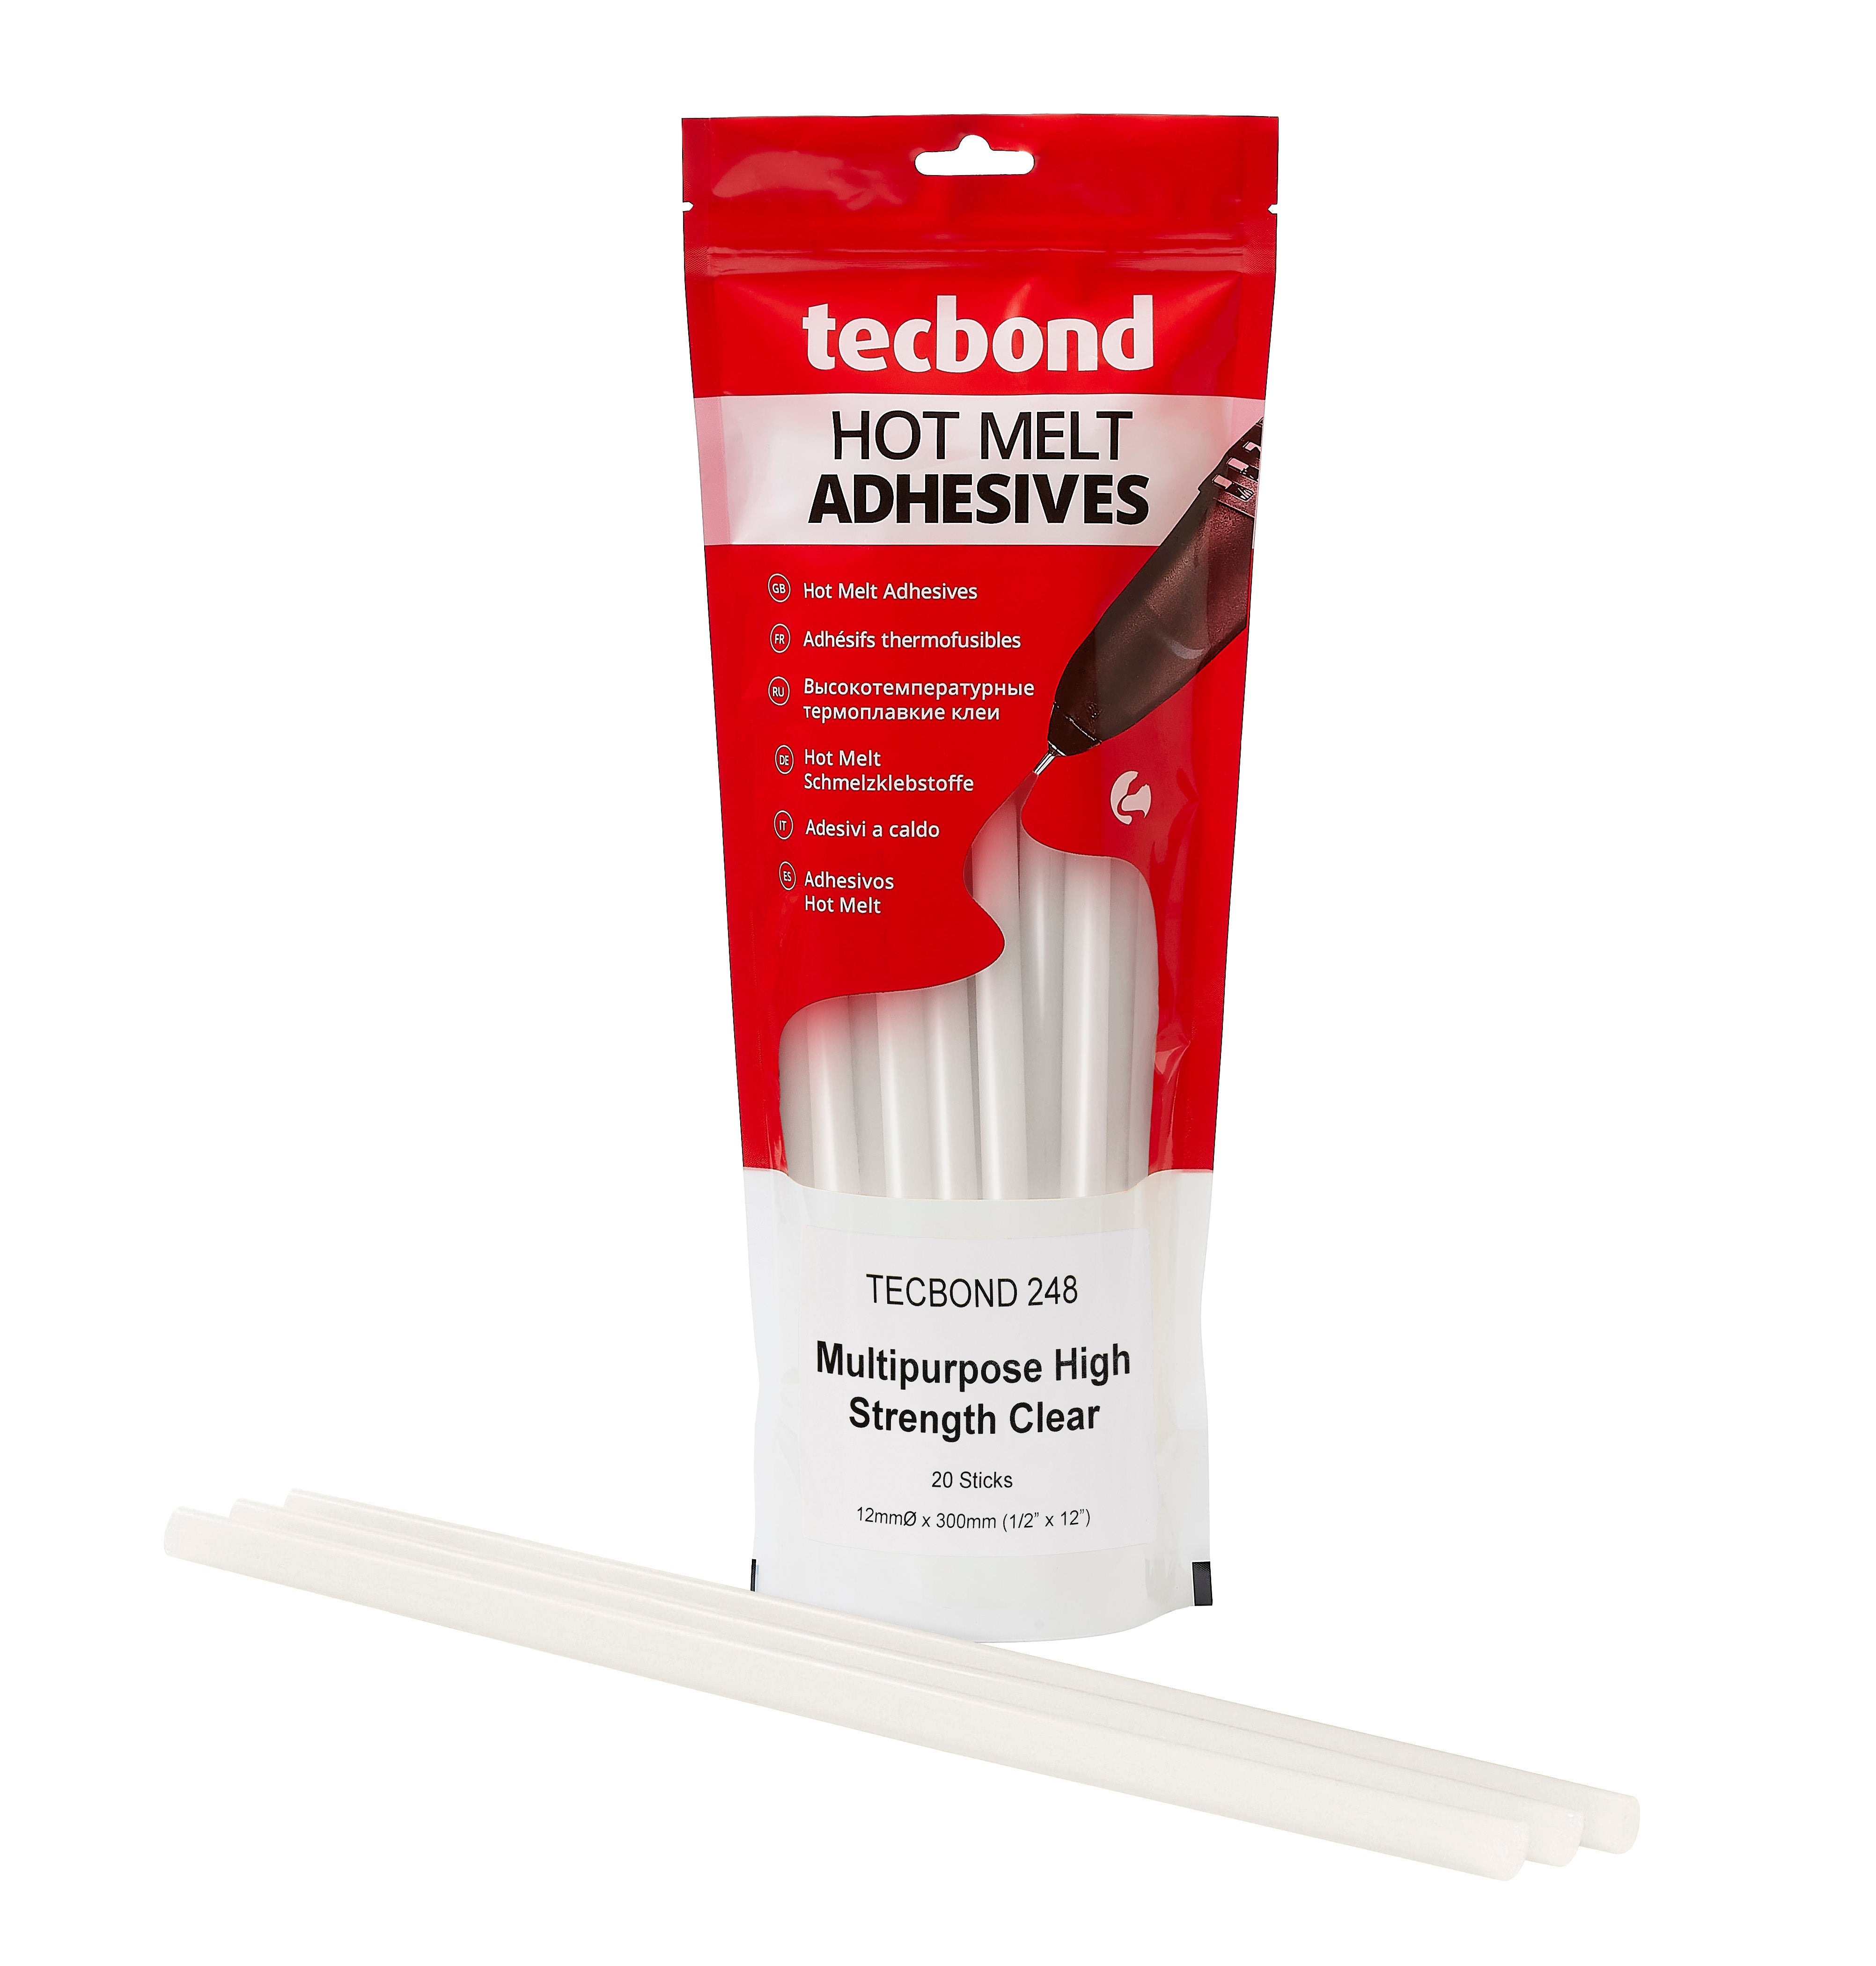 Tecbond 248 High Strength Construction Hot Melt glue Sticks